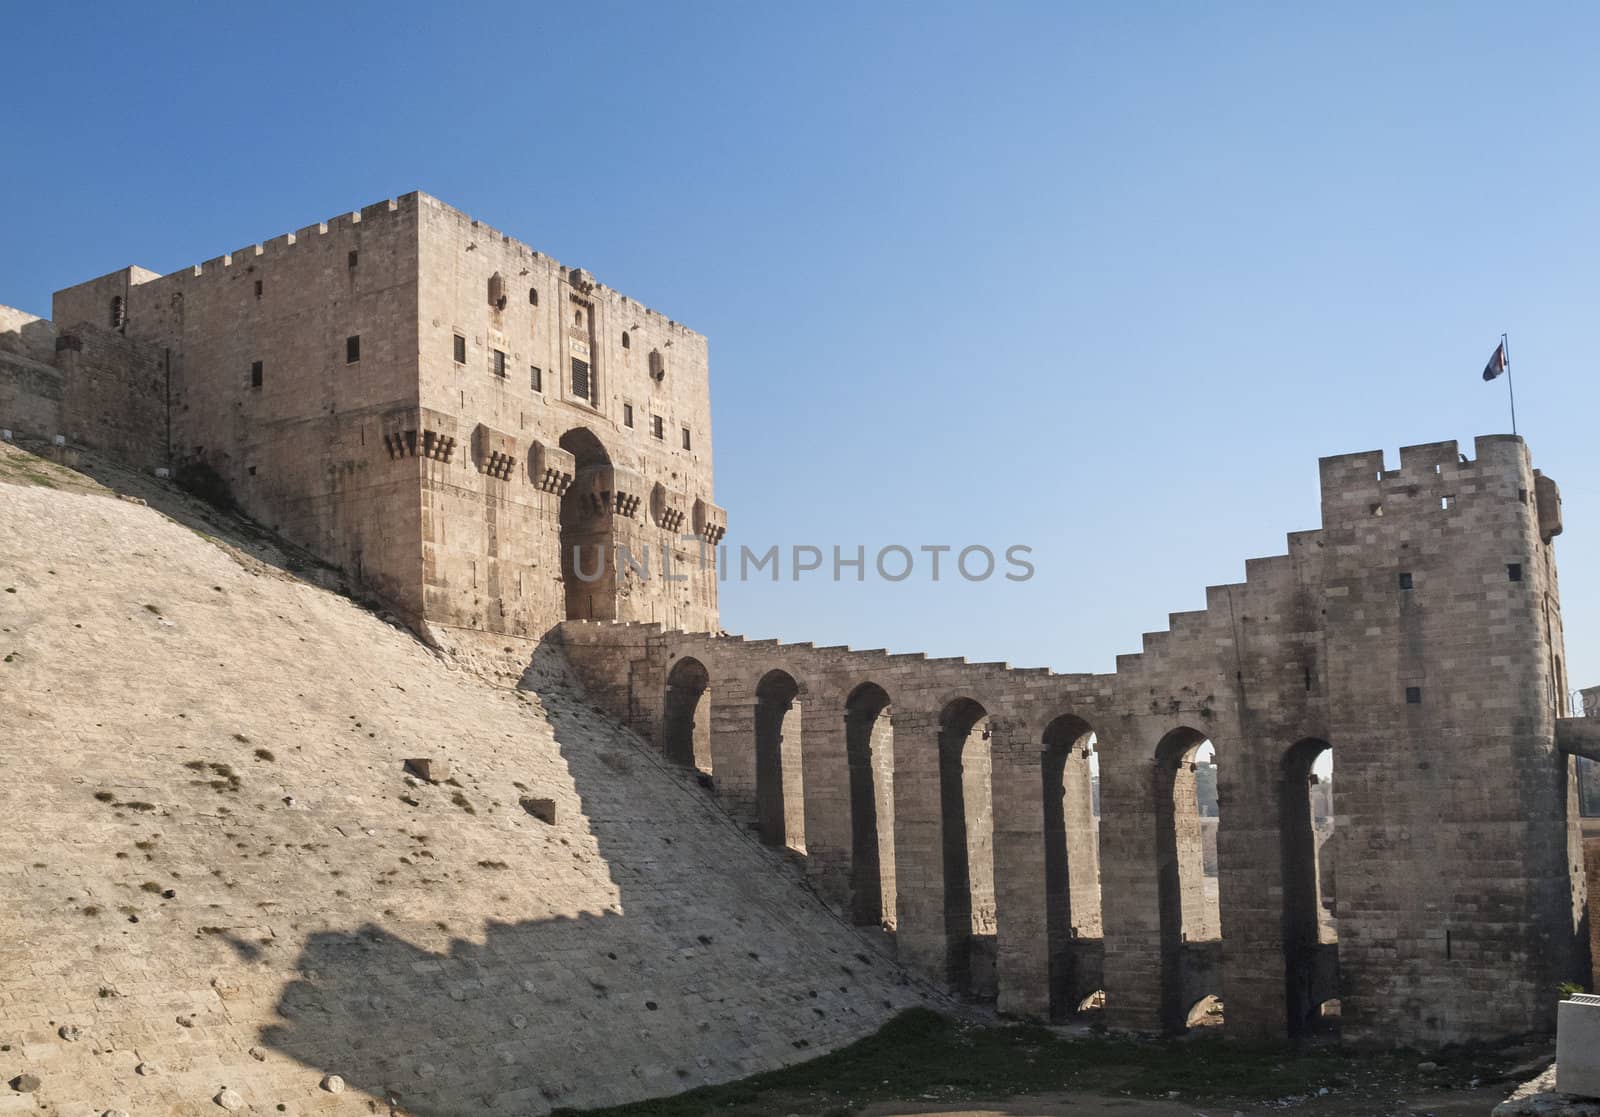 aleppo citadel in syria by jackmalipan